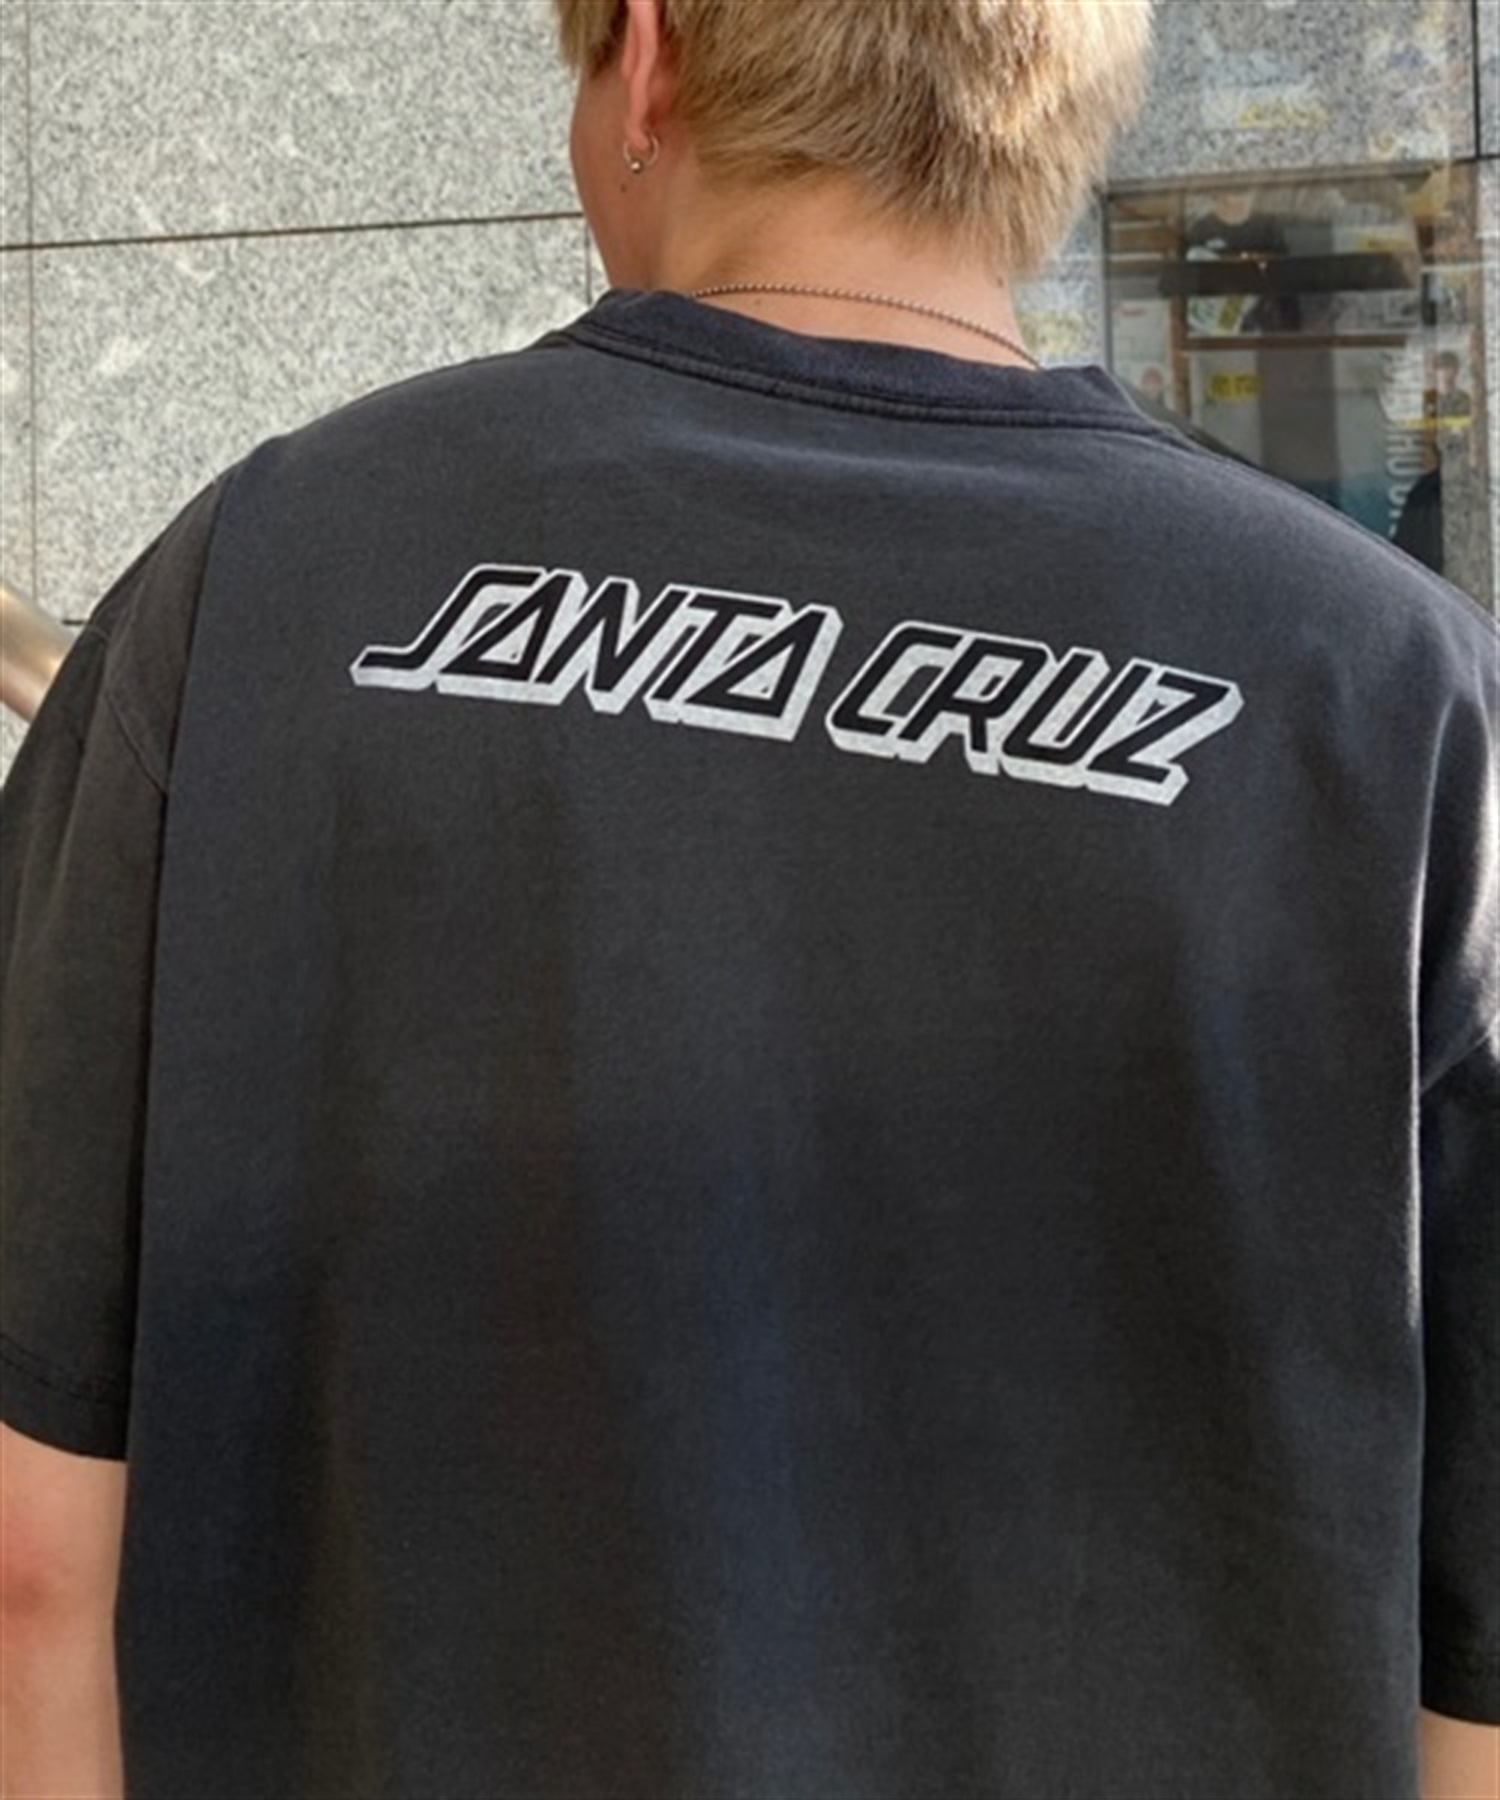 SANTA CRUZ サンタクルーズ COSMIC BONE HAND STRIP S/S 502231413 メンズ 半袖 Tシャツ KK1 D12(WT-M)